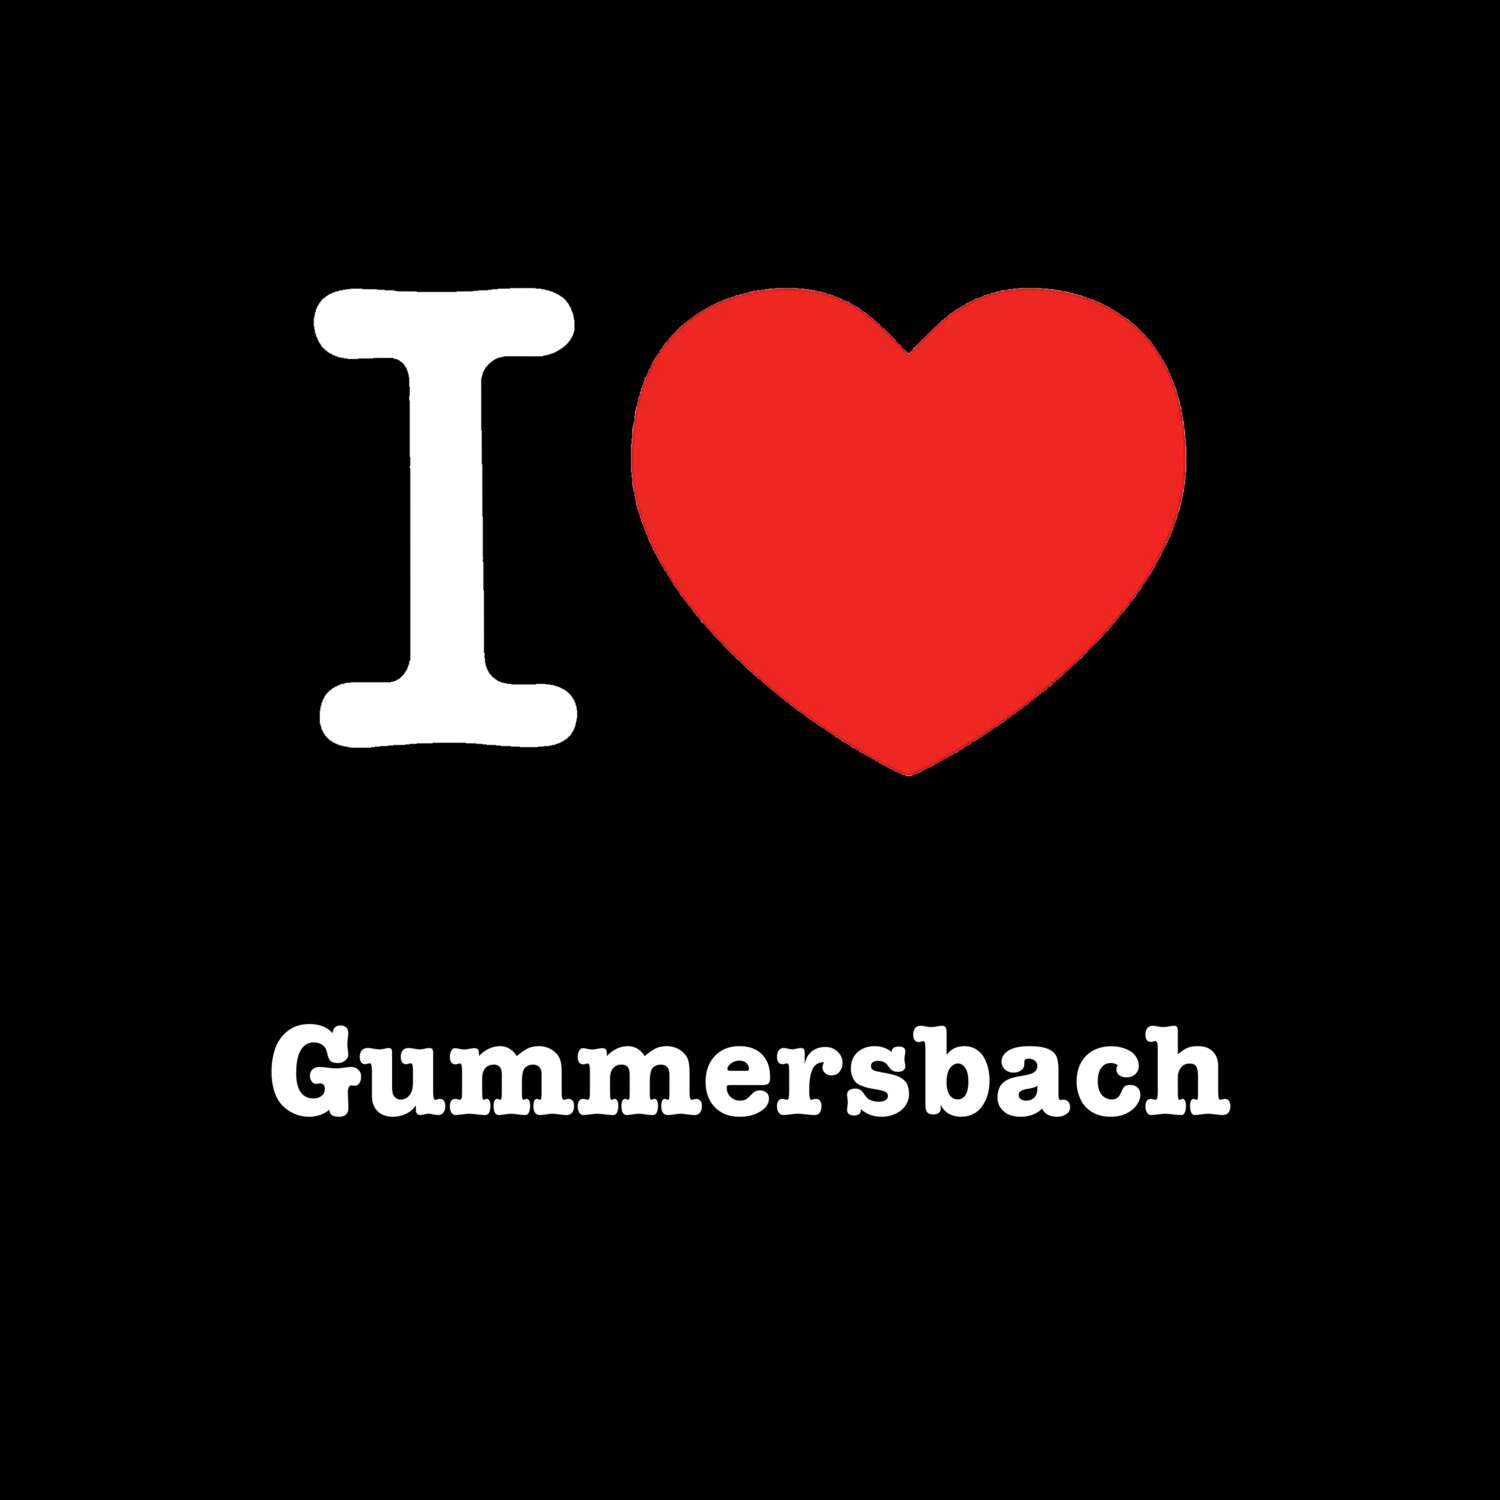 Gummersbach T-Shirt »I love«